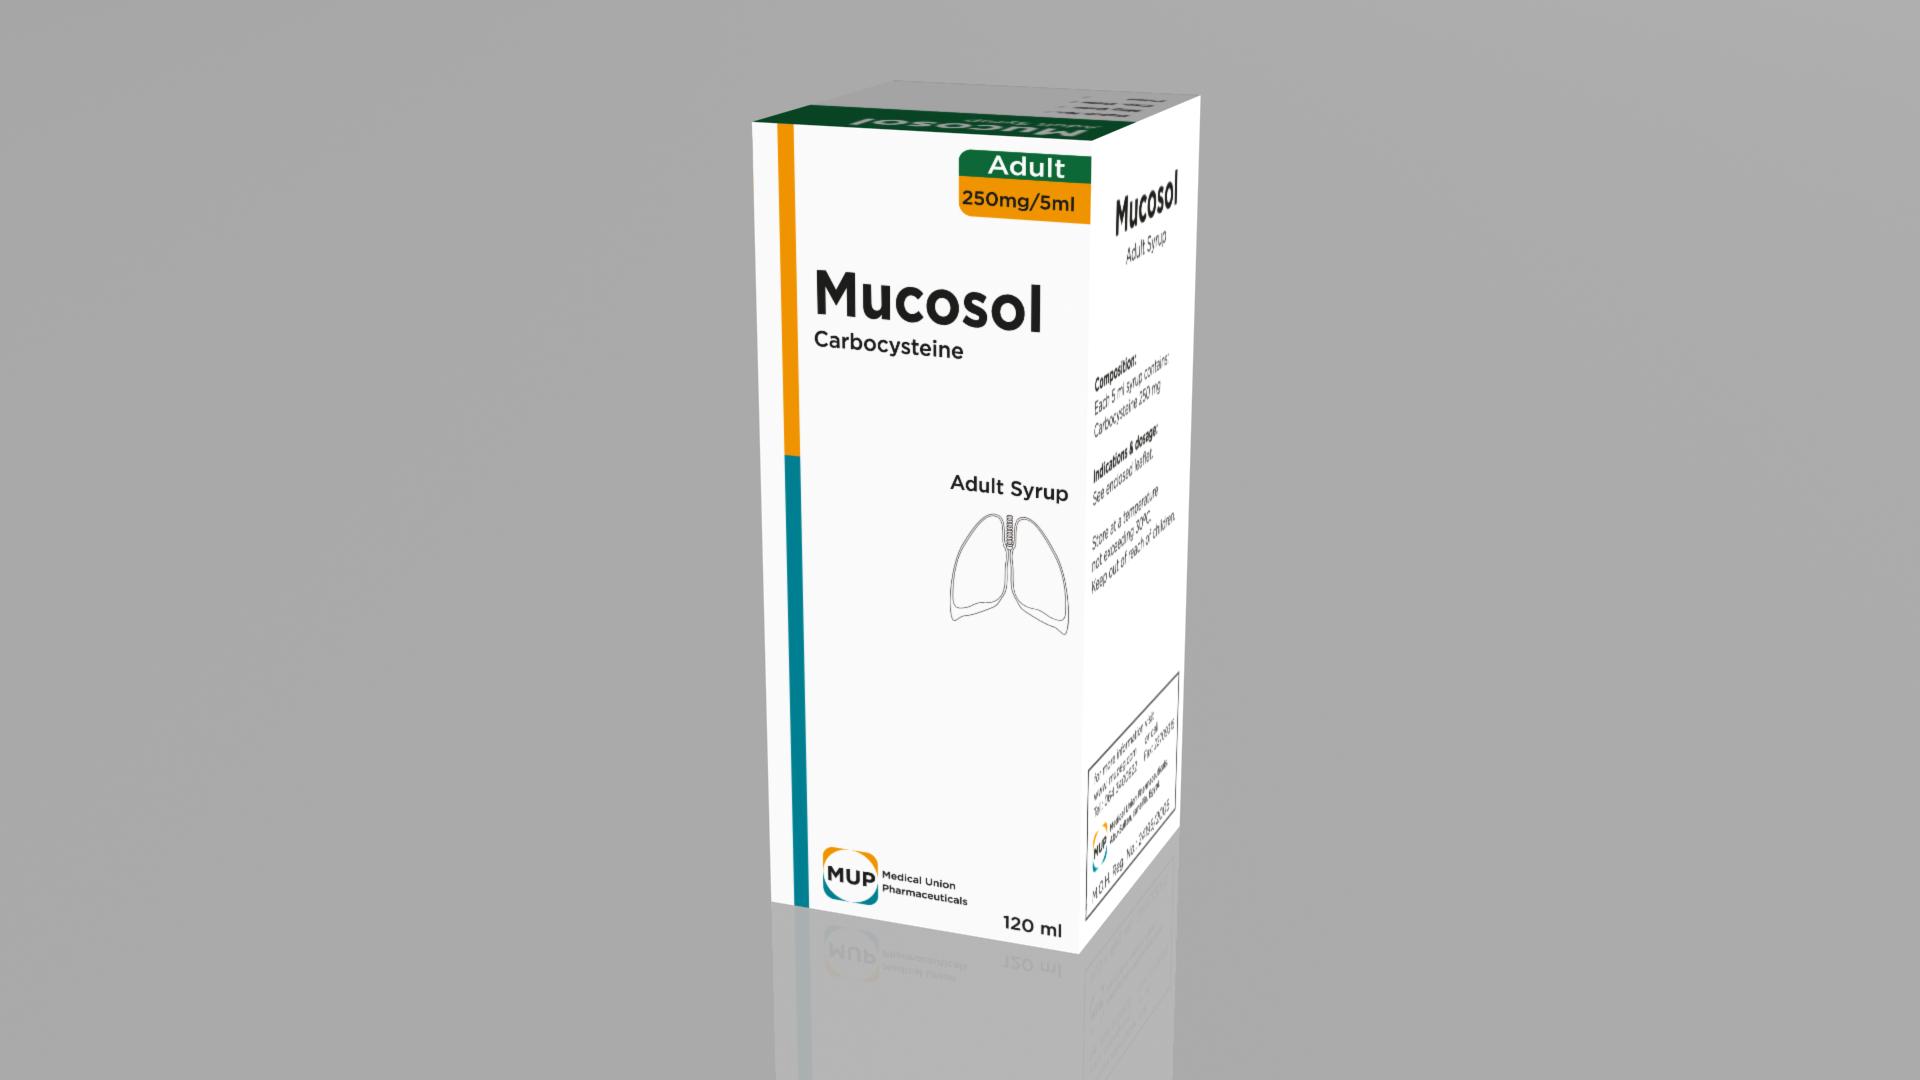 ميوكوسول Mucosol لعلاج نزلات البرد والتهاب الأذن الوسطى